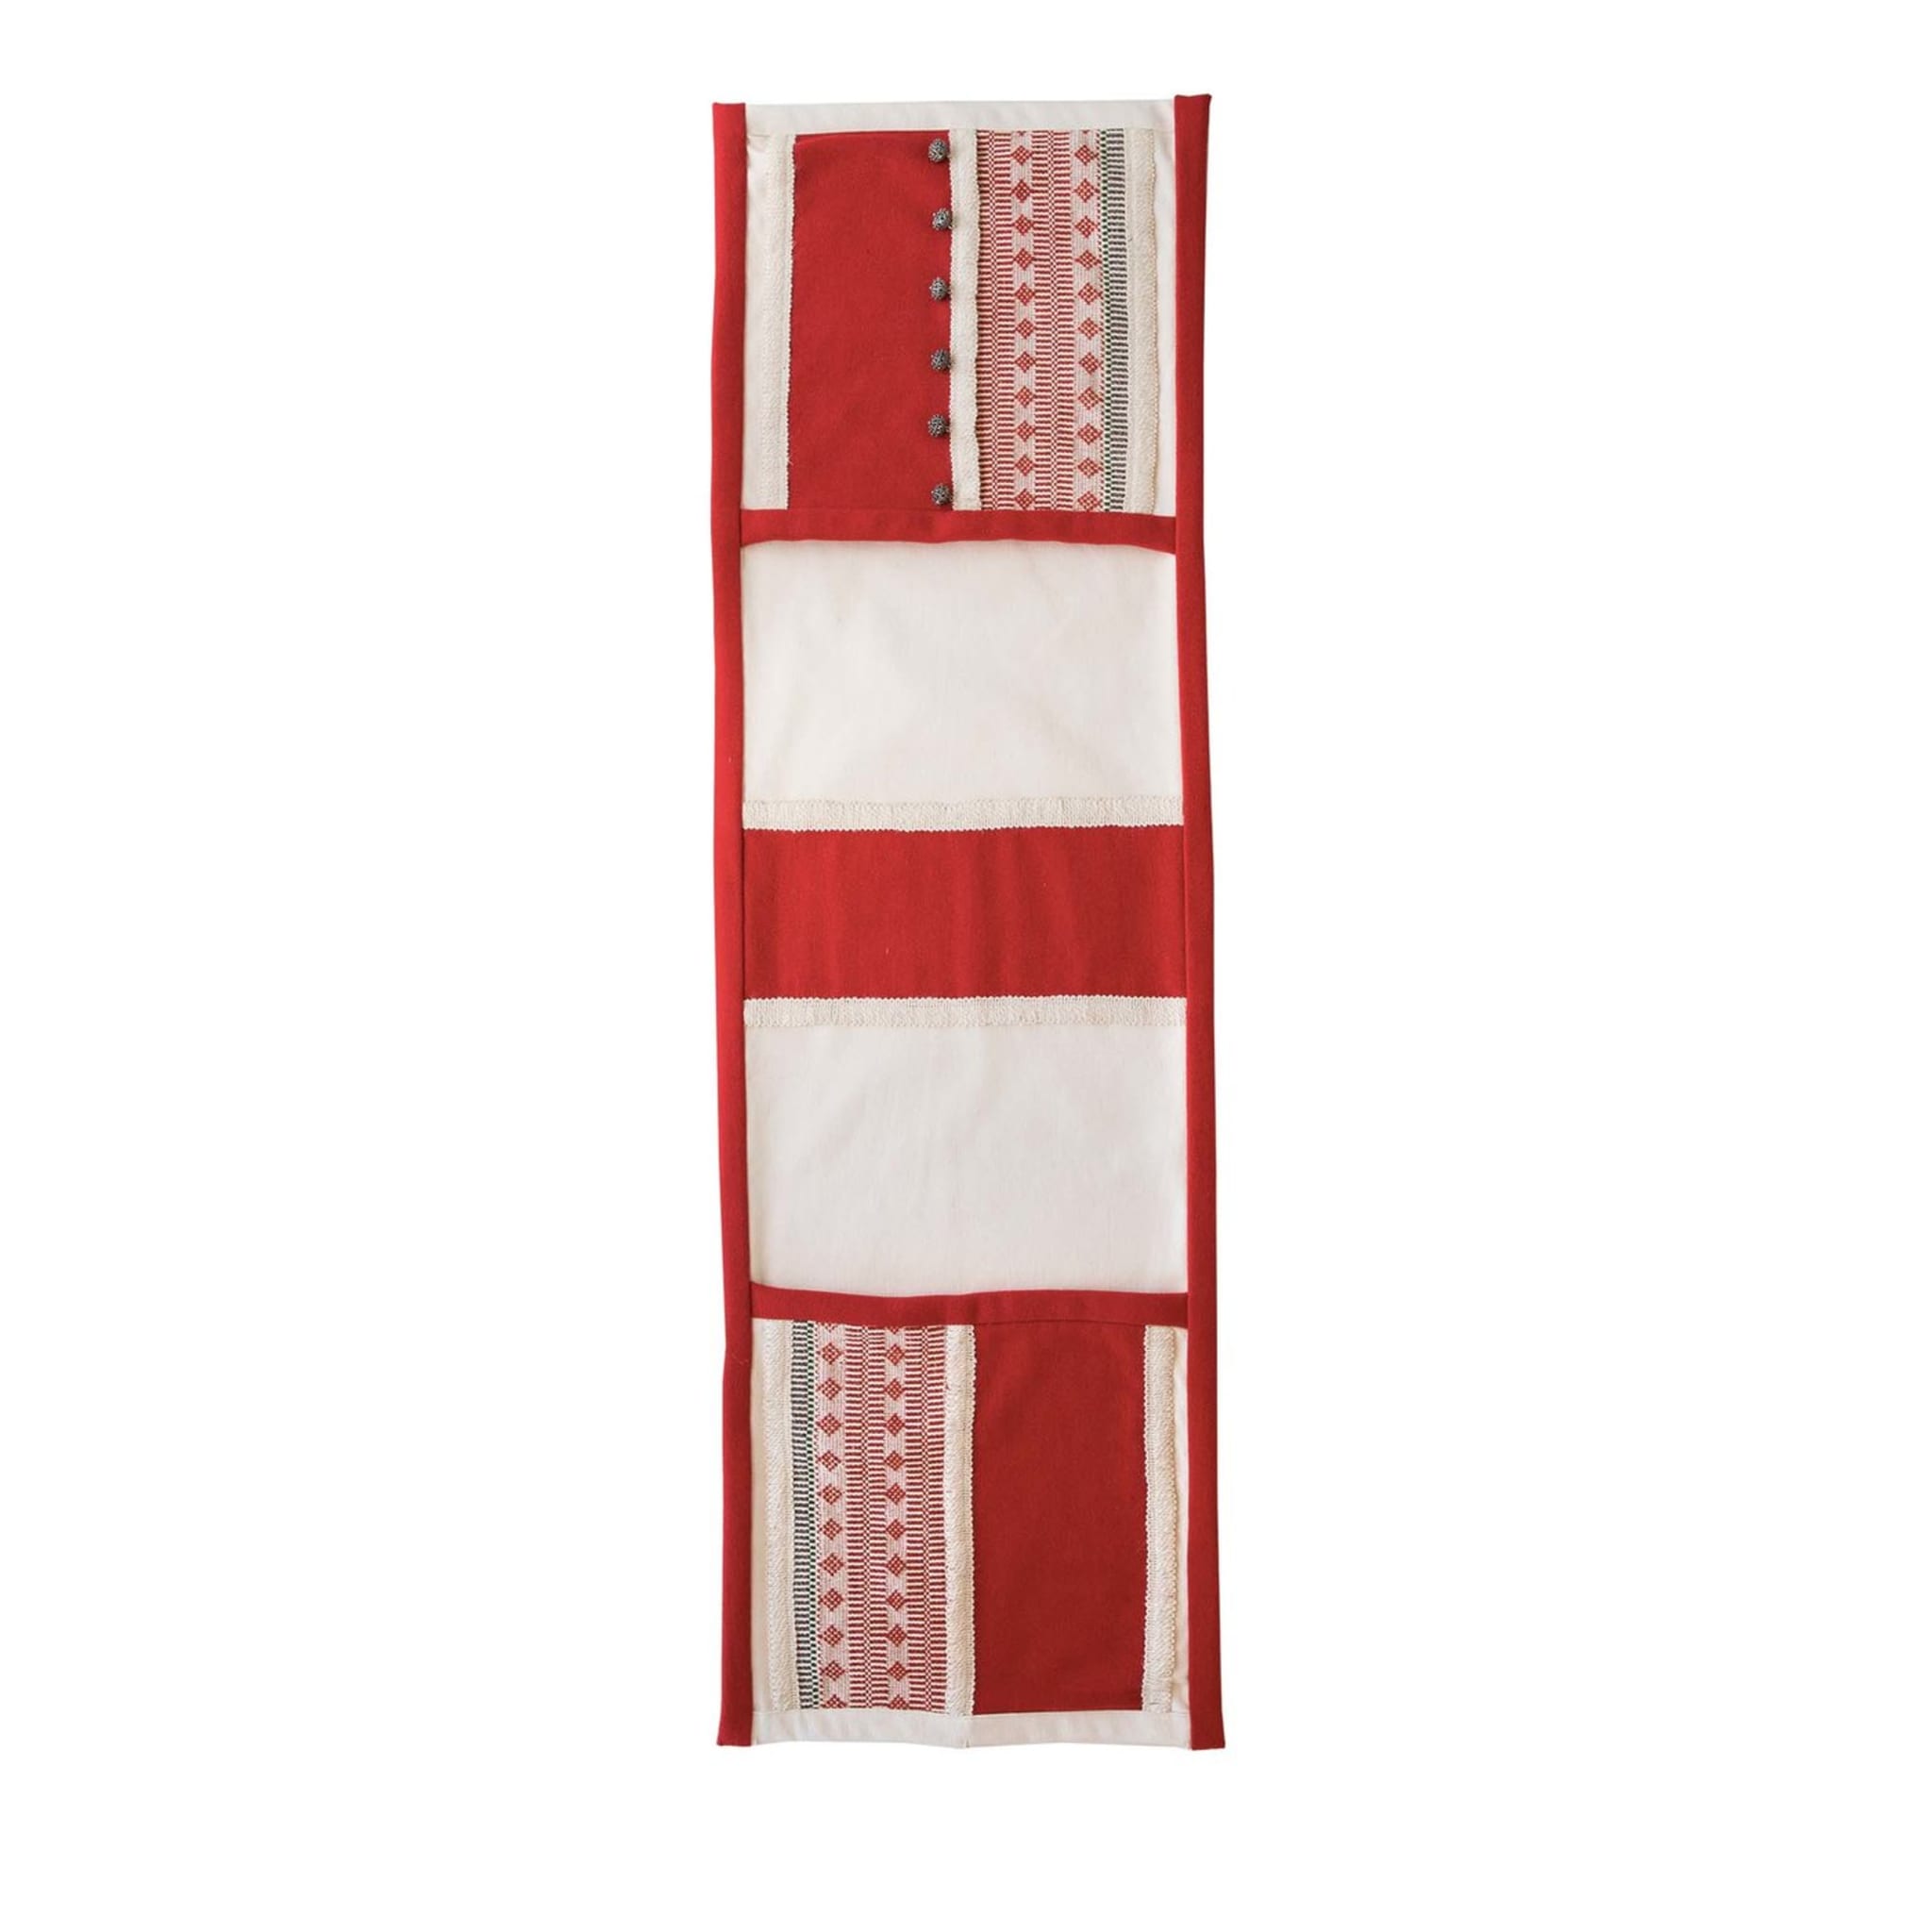 Traversée de lit Tradition rouge et blanche - Vue principale